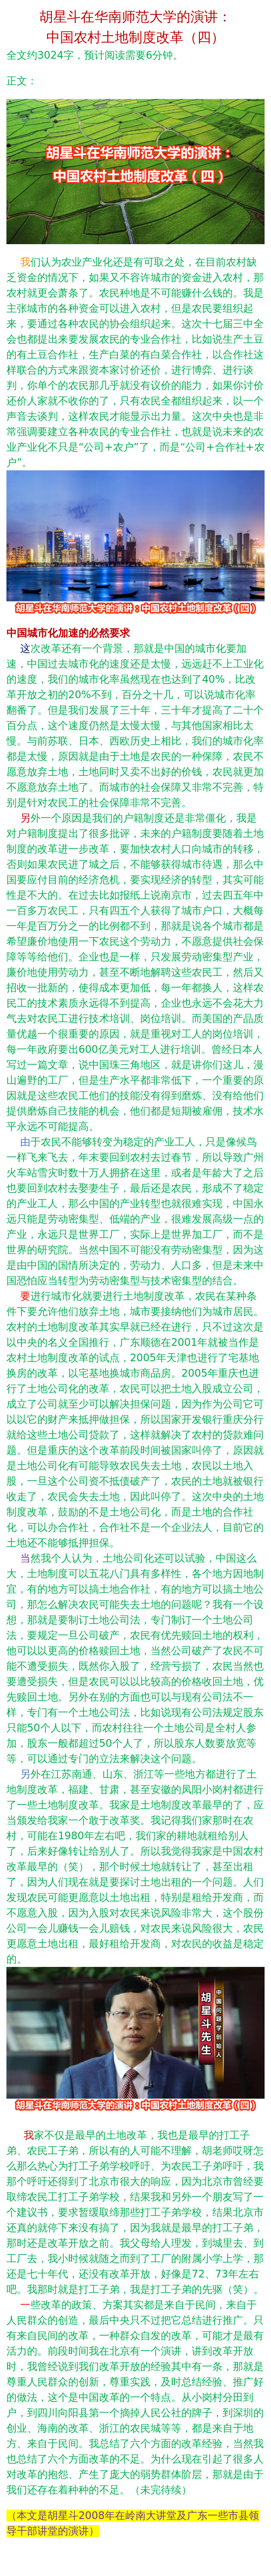 胡星斗在华南师范大学的演讲:中国农村土地制度改革(四)